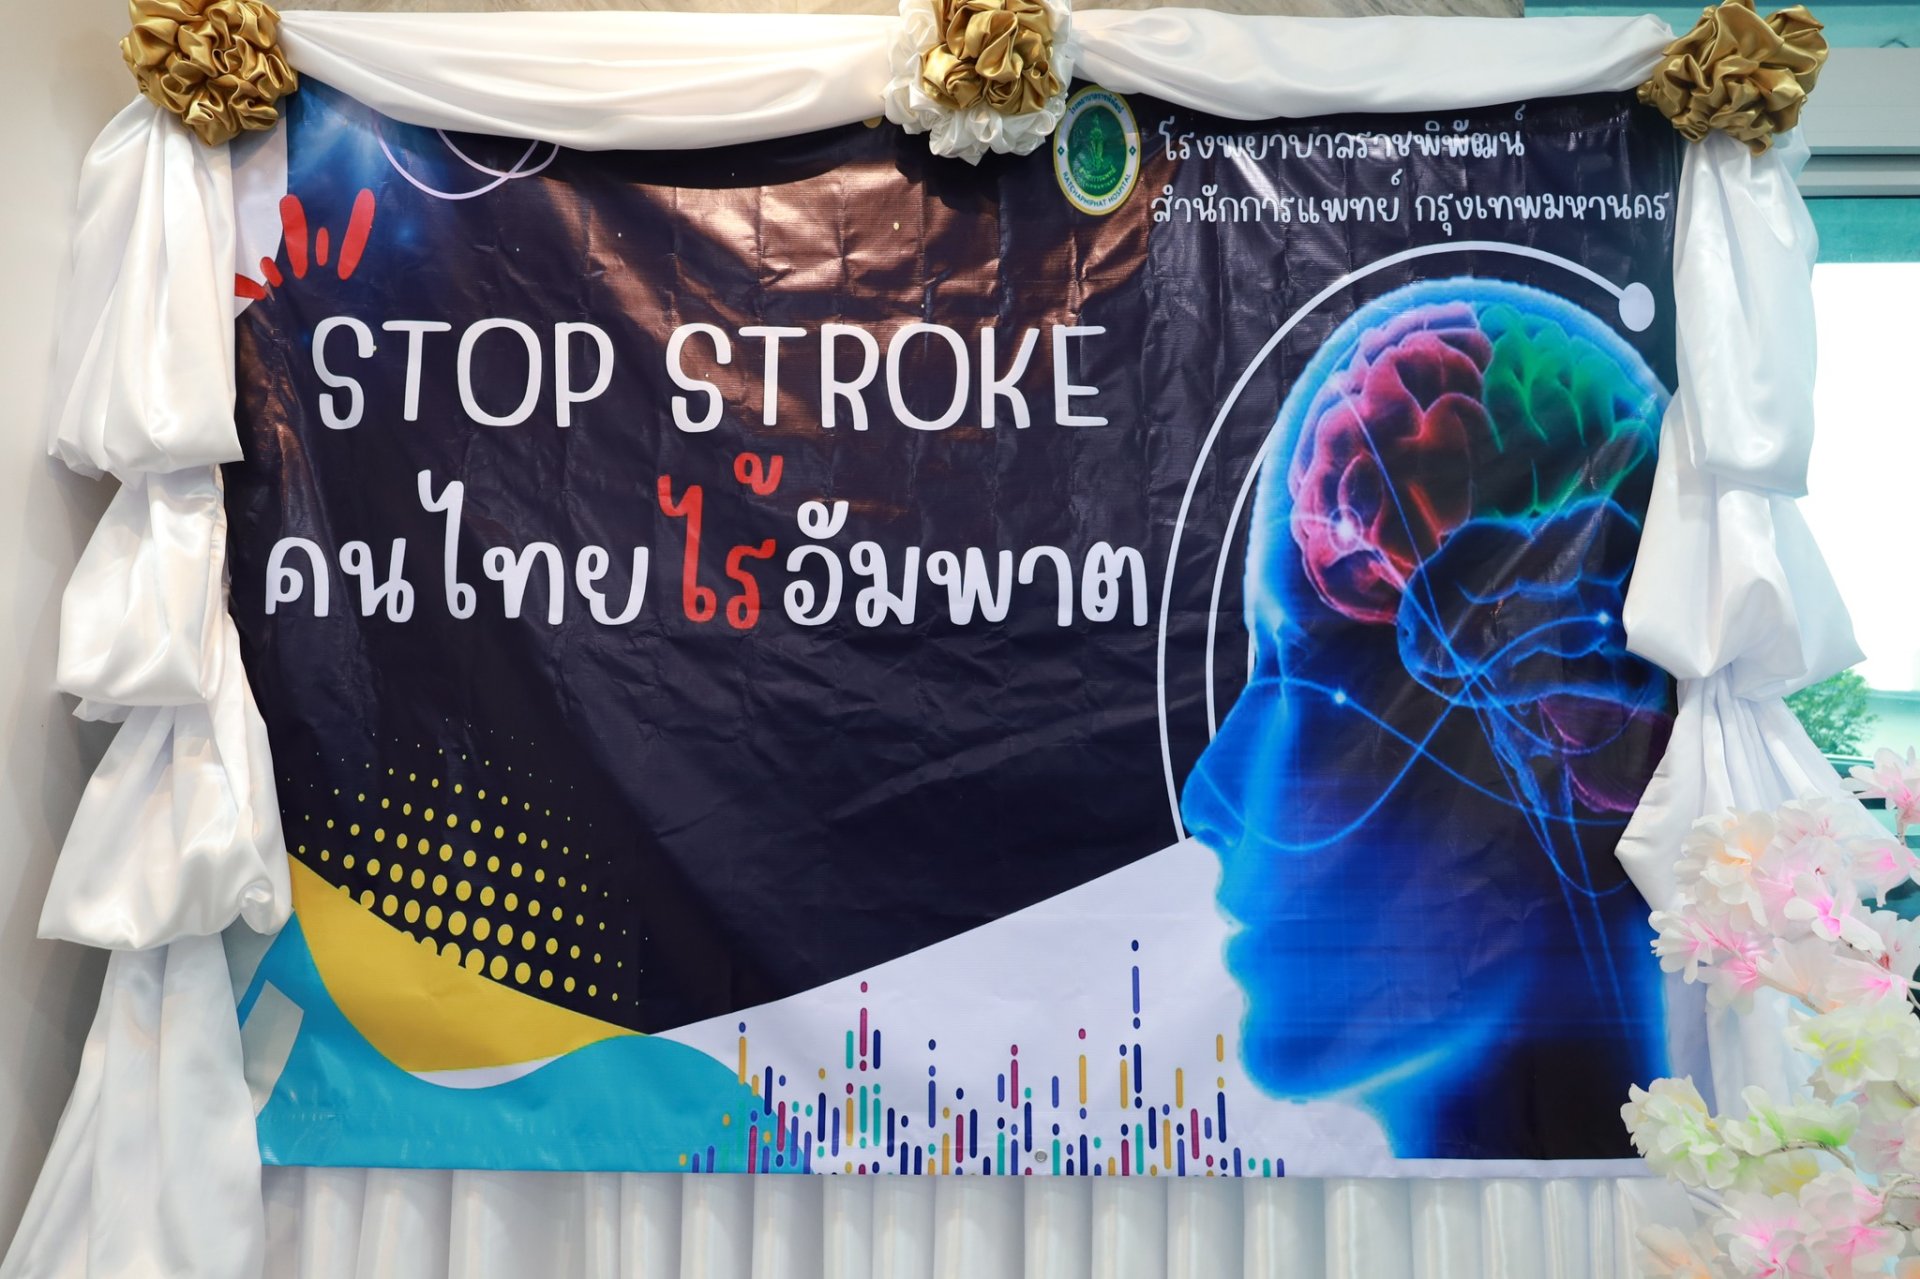 กิจกรรม World Stroke Day " StopStrokeคนไทยไร้อัมพาต